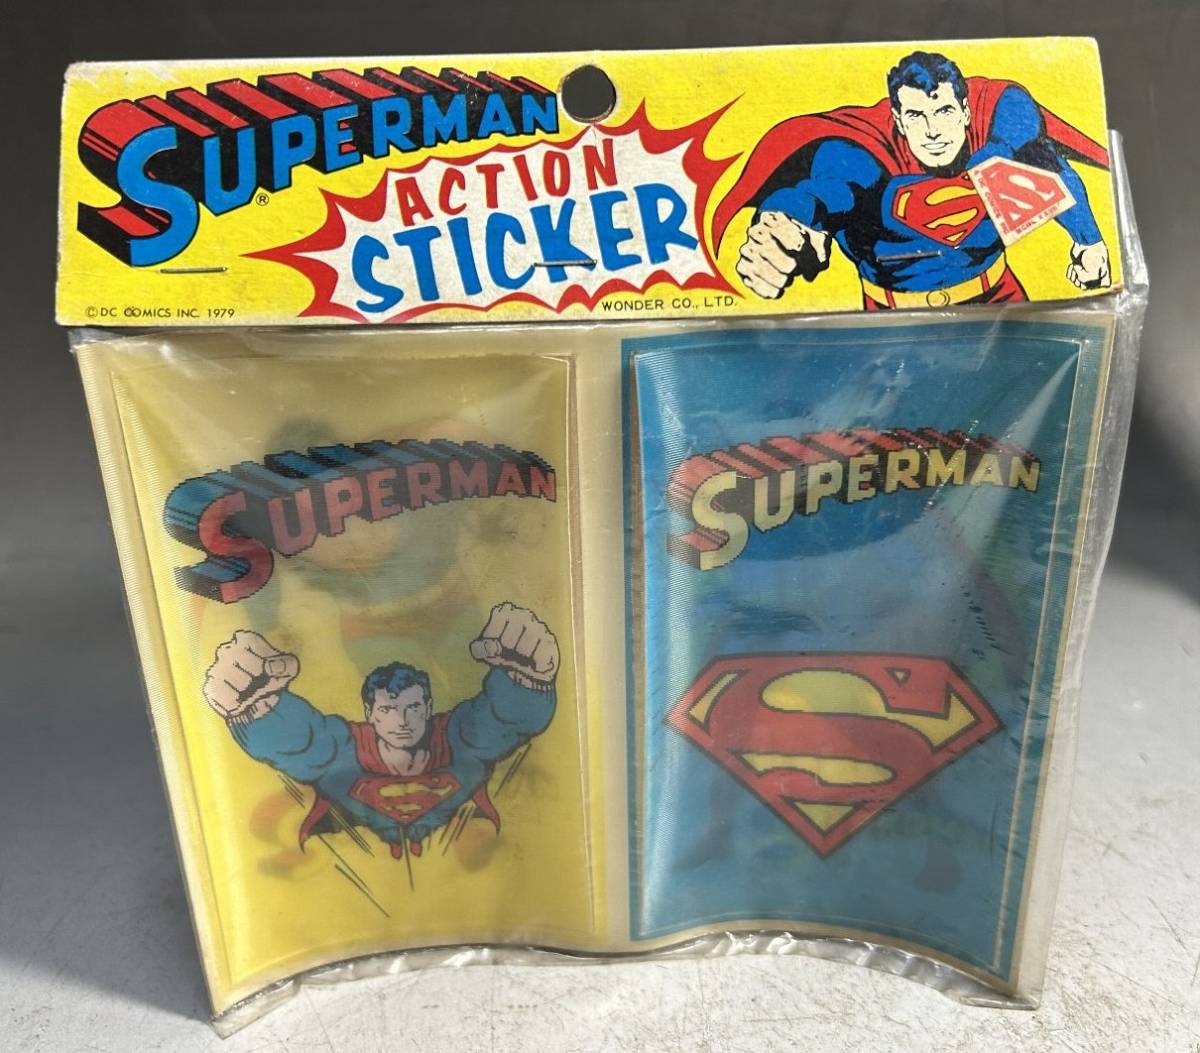  Супермен 1979 год подлинная вещь action стикер fono грамм цельный перемена наклейка неиспользуемый товар редкость Vintage 